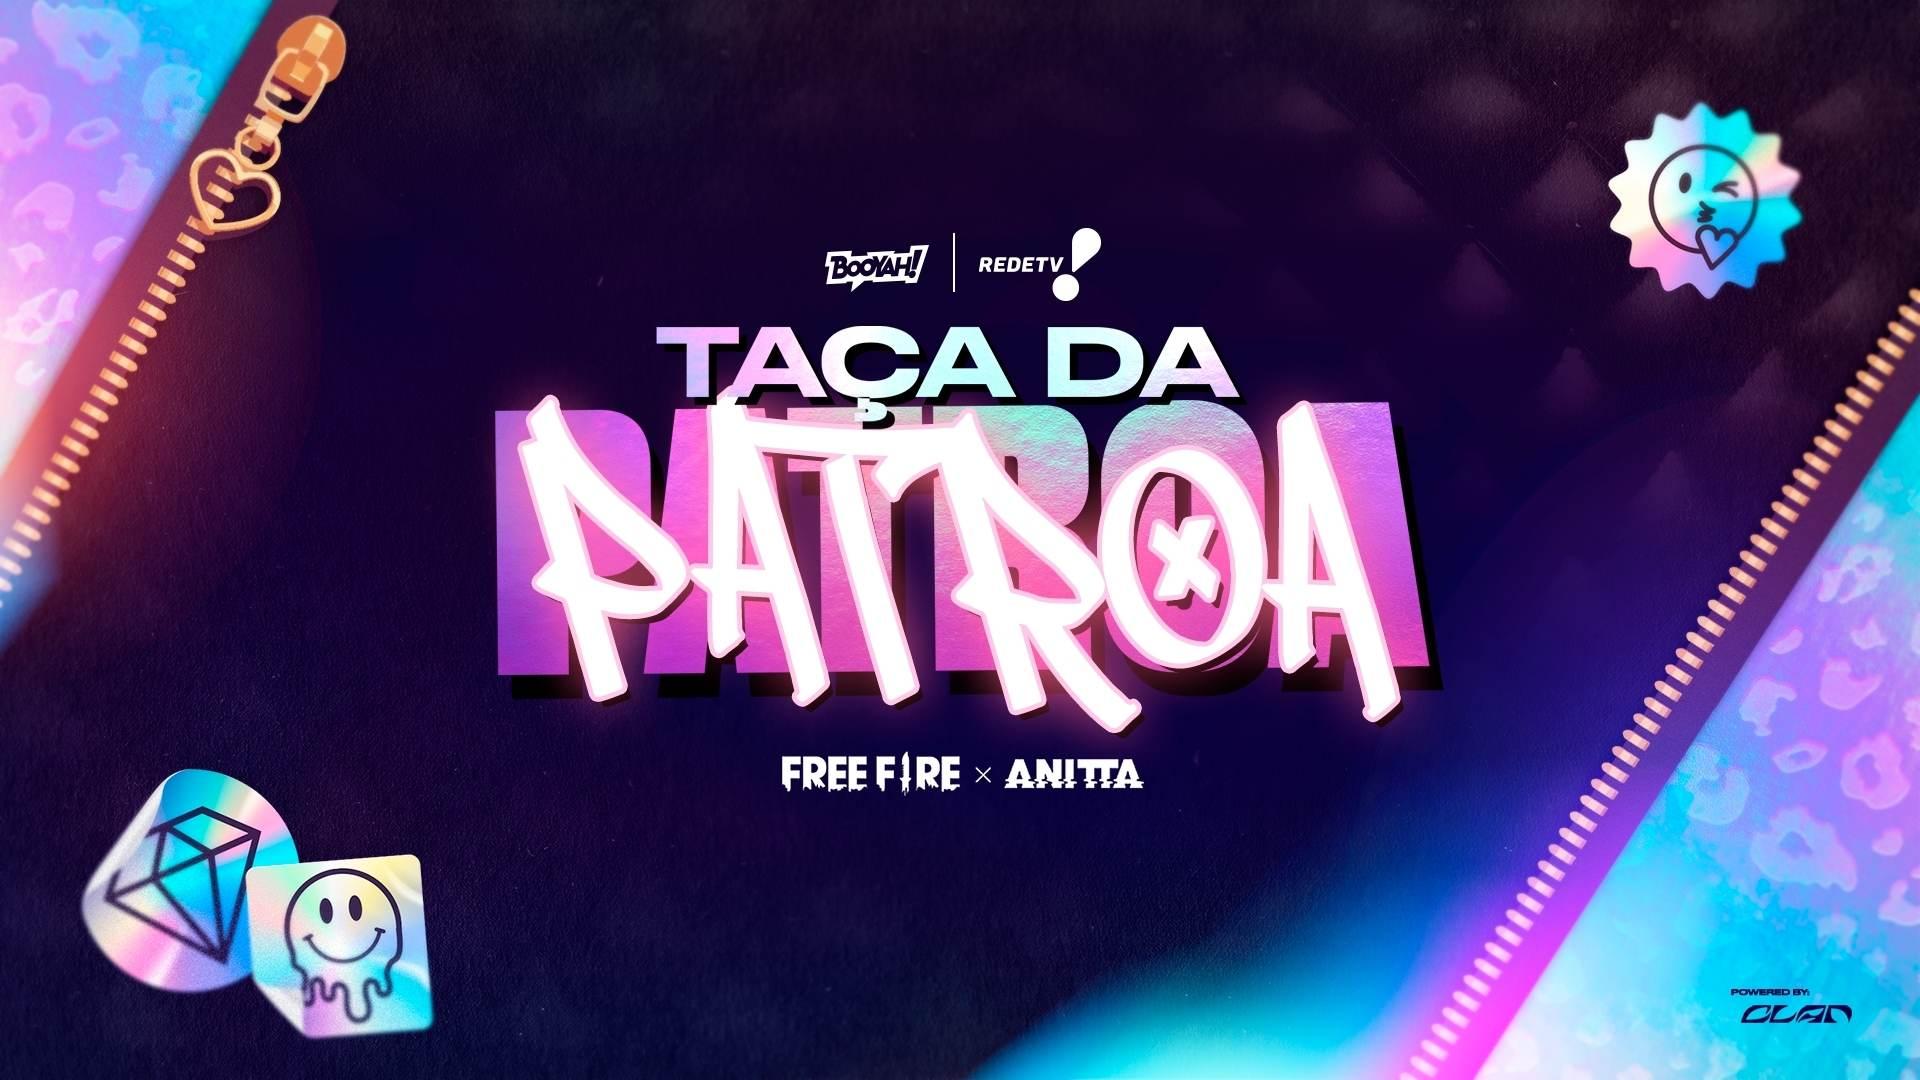 Taça da Patroa FF: semifinal do torneio da Anitta será transmitida na TV aberta